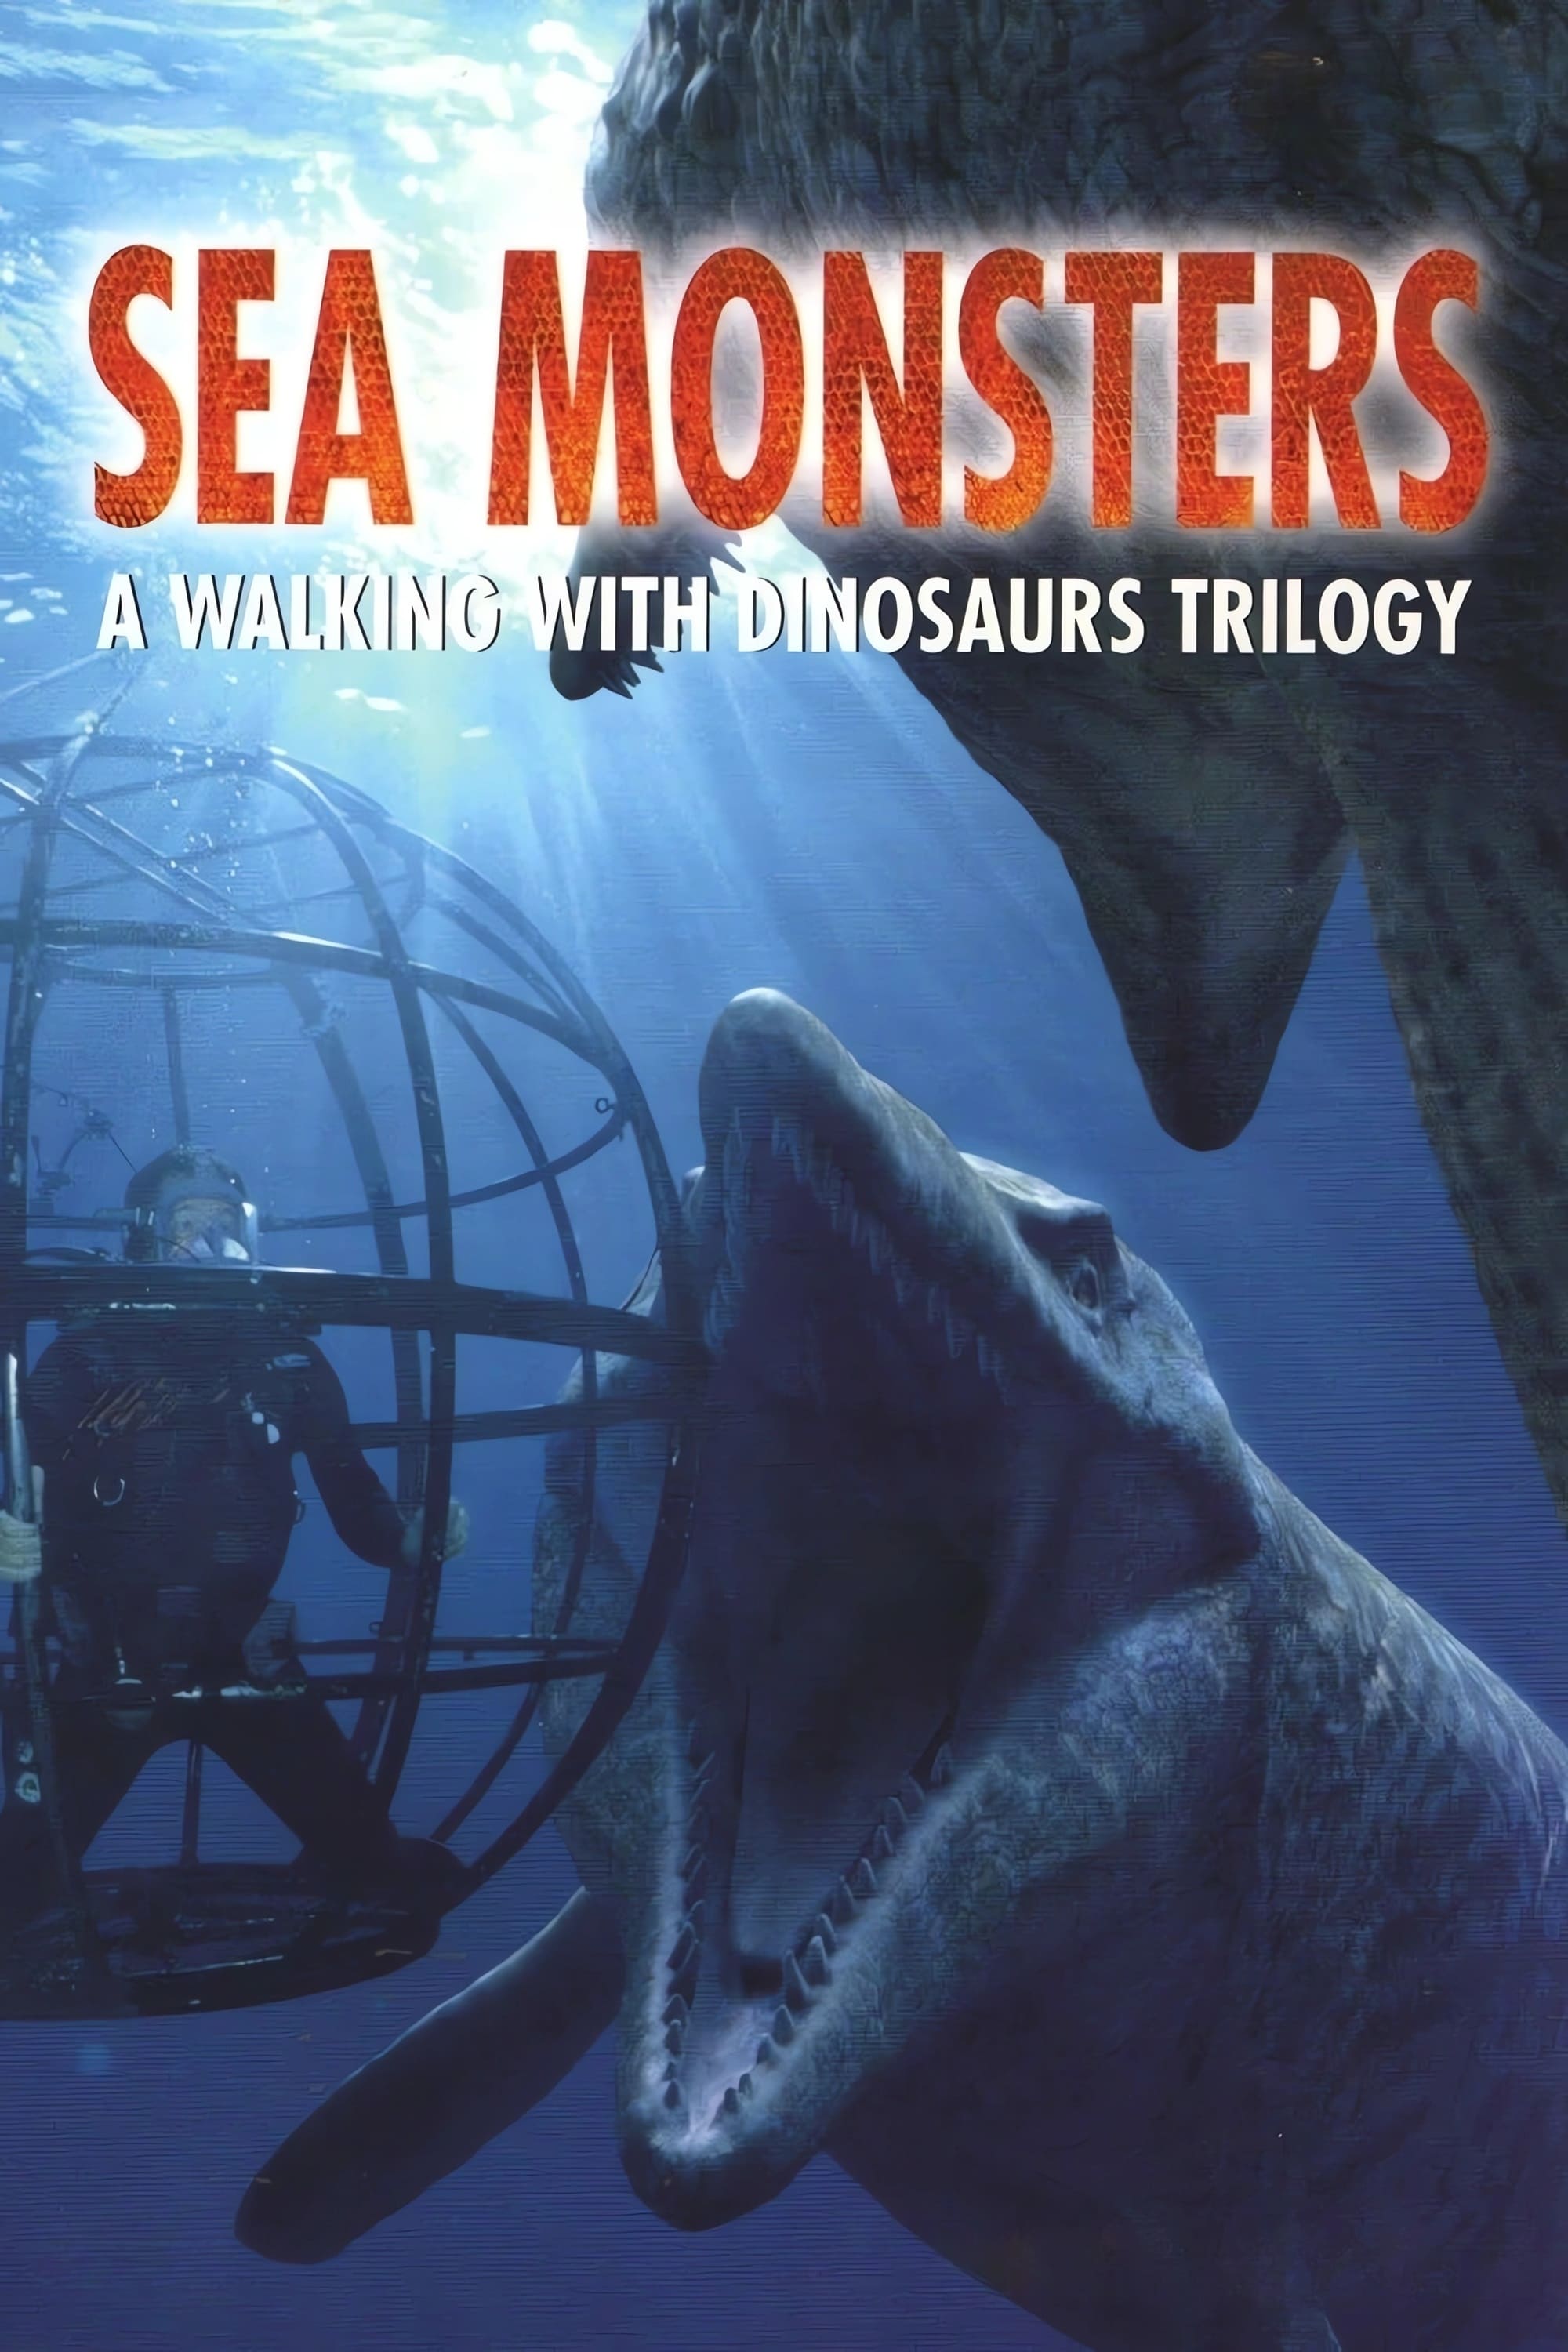 Les Monstres du fond des mers